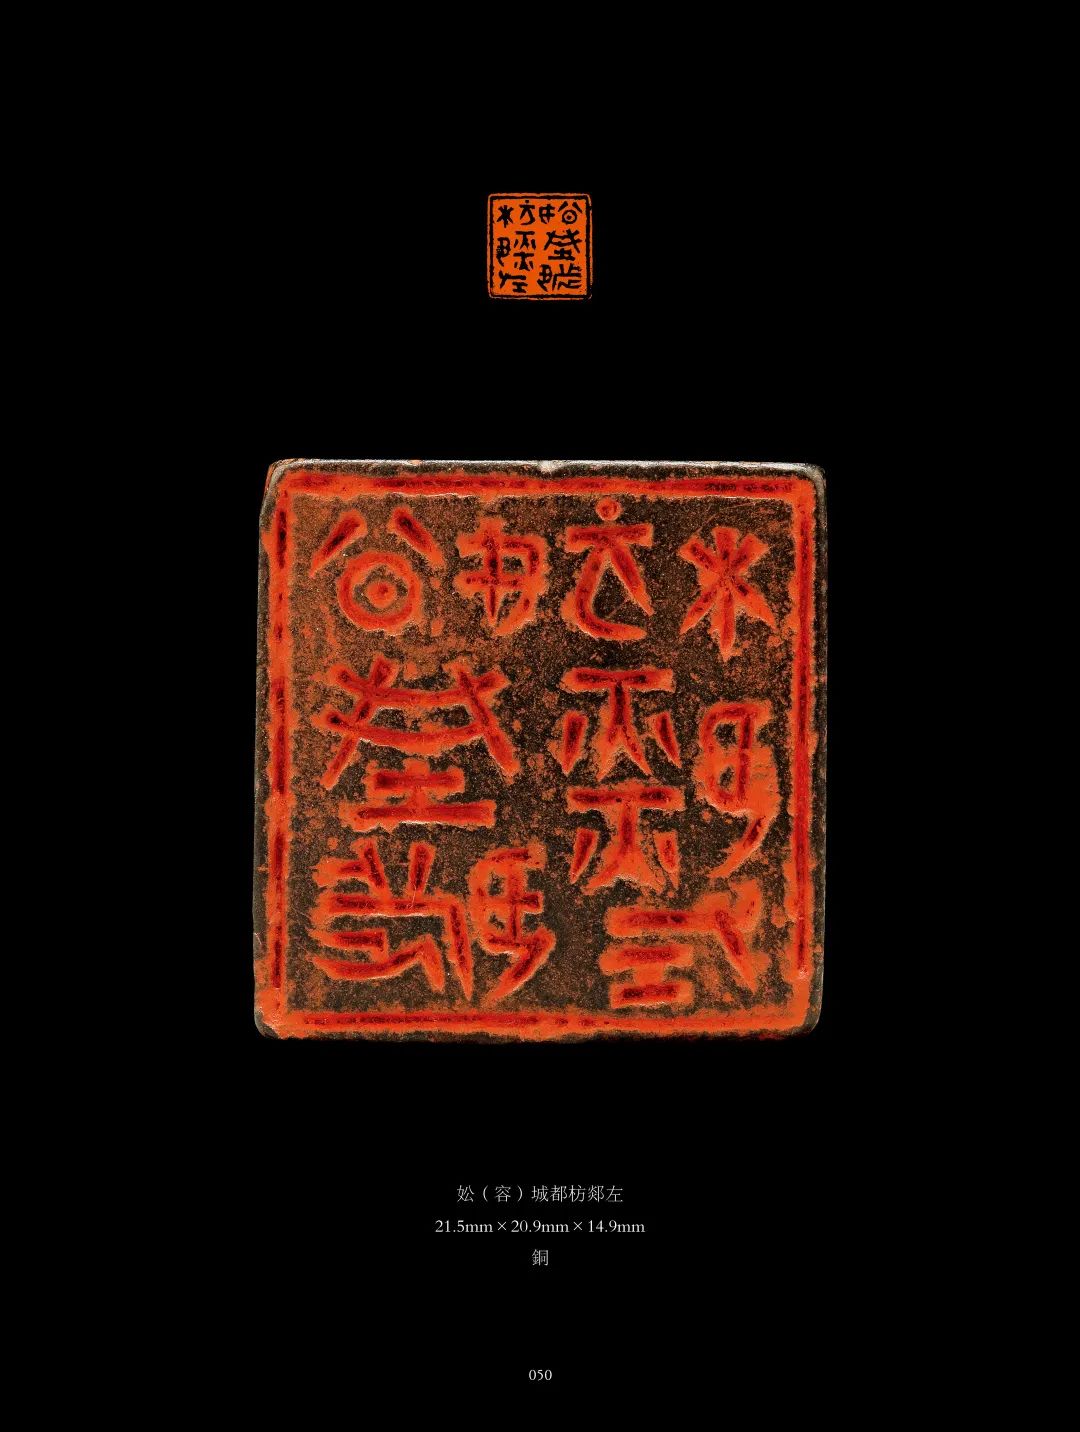 国内最具学术与艺术价值的玺印收藏集合体之一《古物影——黄宾虹古玺印收藏集萃》(图148)